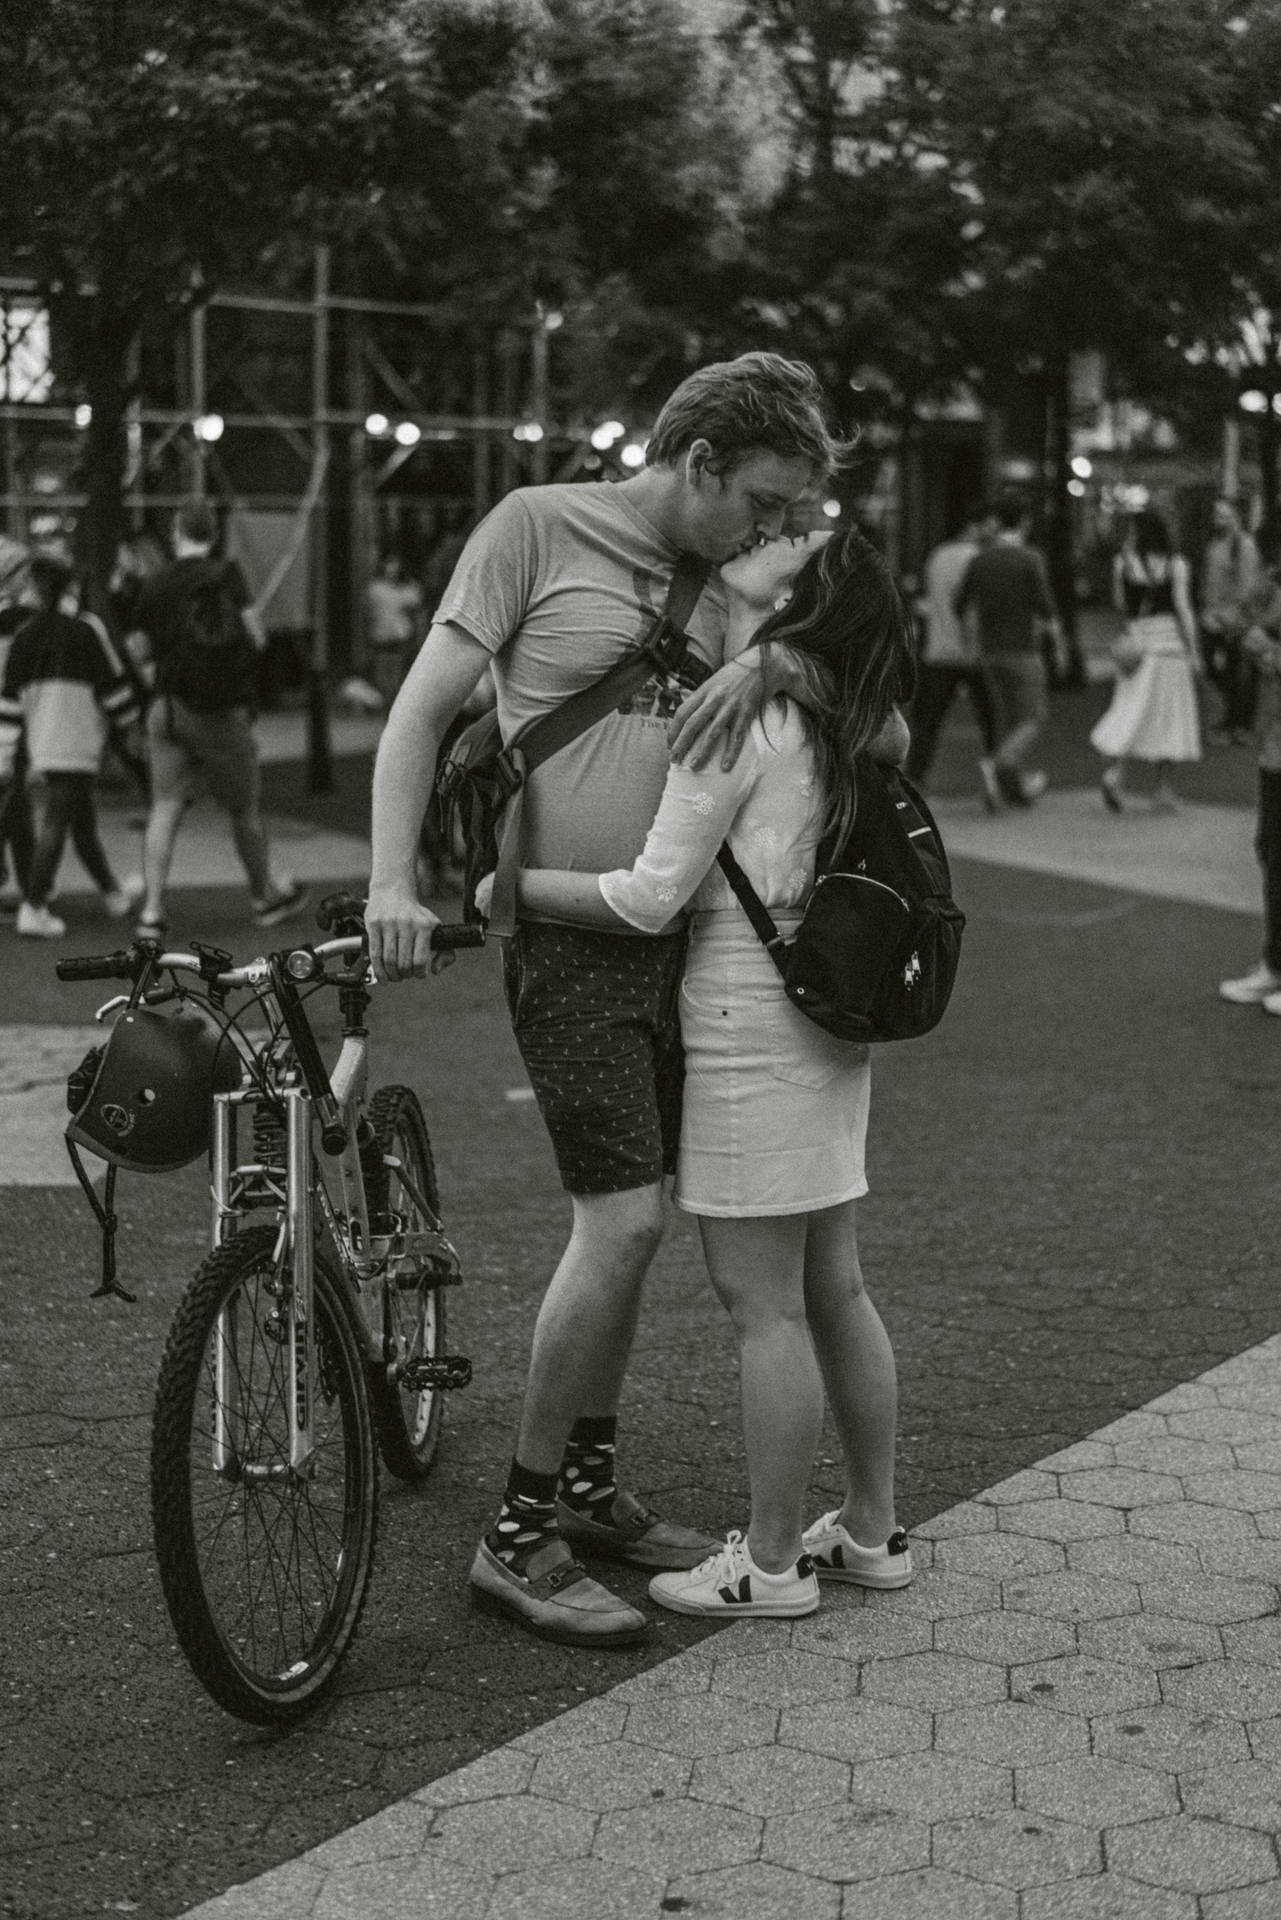 Bike Lovers Kissing In Public